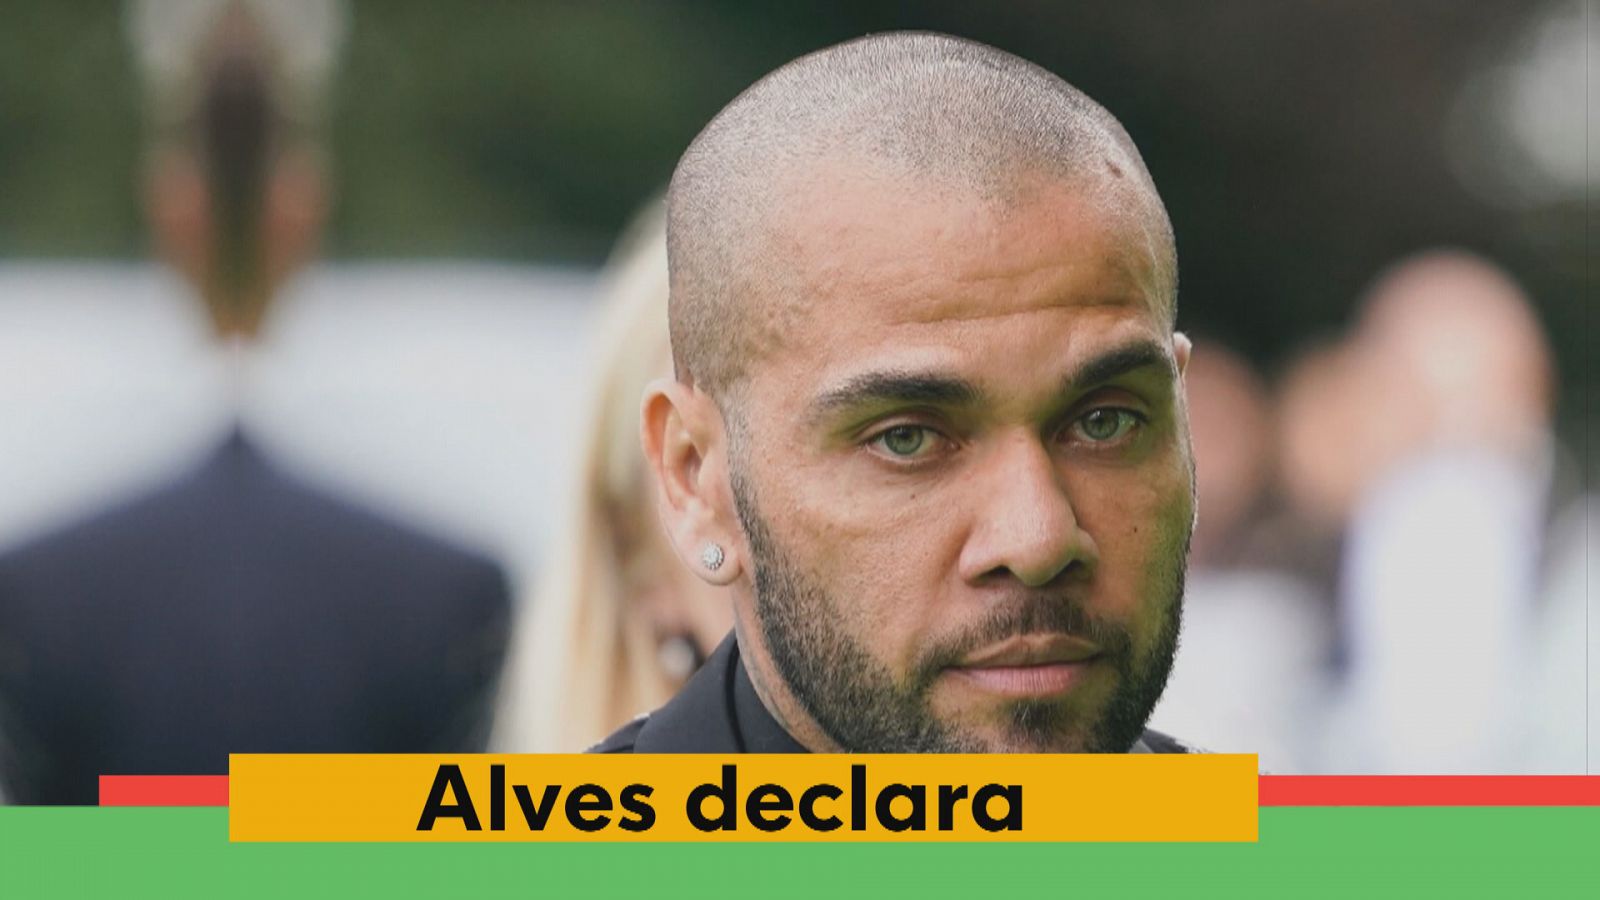 Alves torna a declarar davant la jutgessa: afirma que la relació amb la denunciant va ser consentida